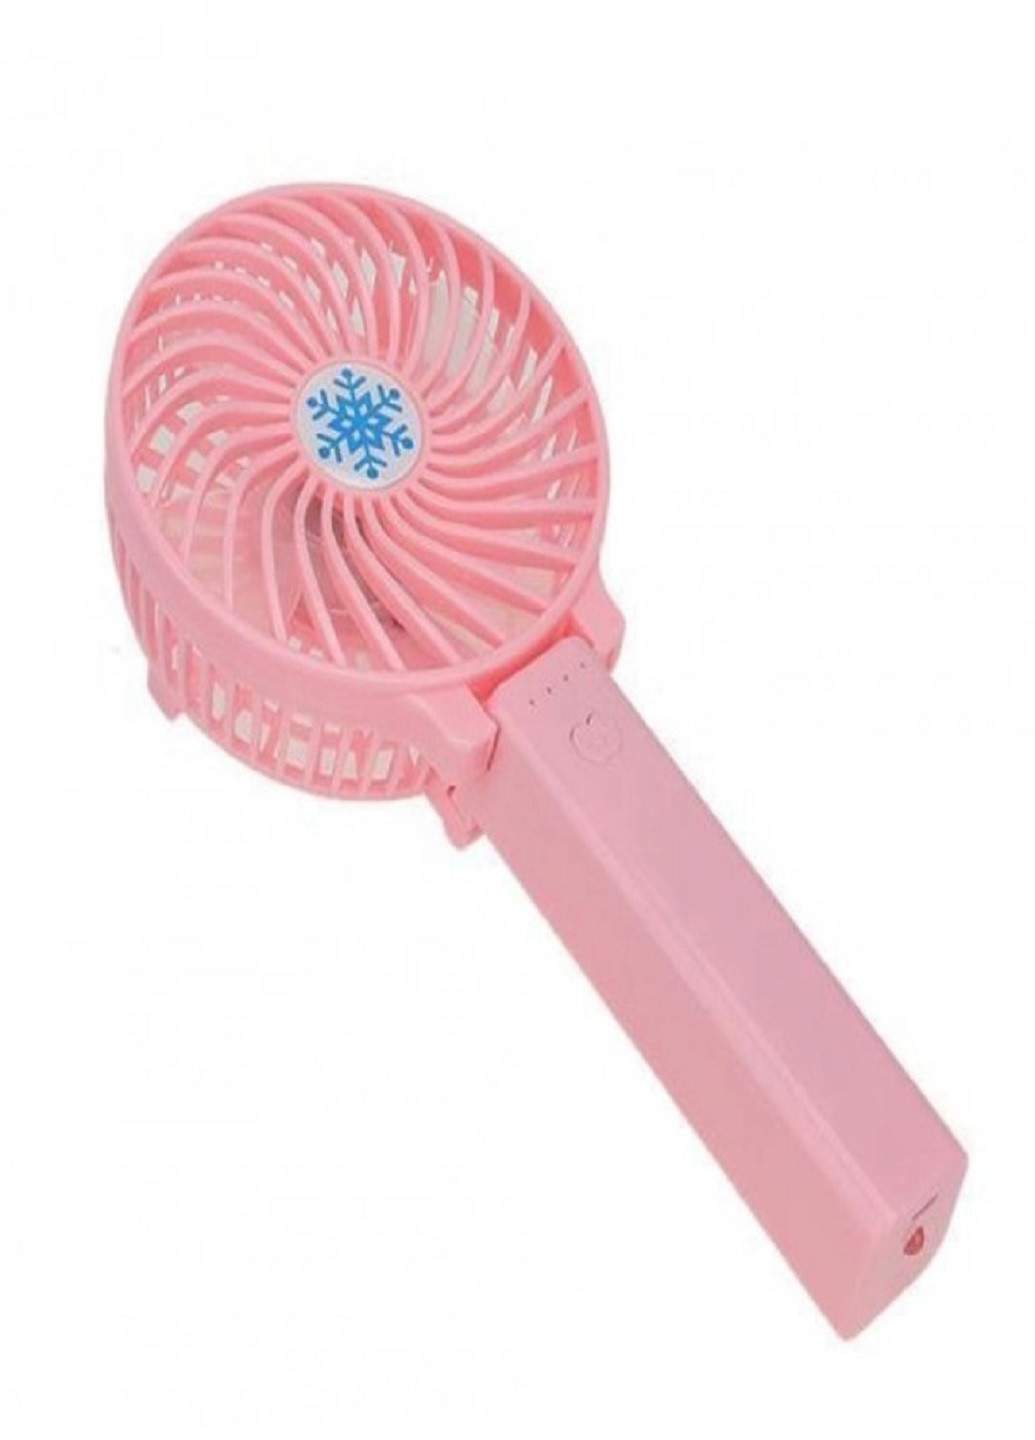 Универсальный портативный ручной вентилятор с аккумулятором и ручкой что складывается Mini Fan Розовый VTech (258925257)